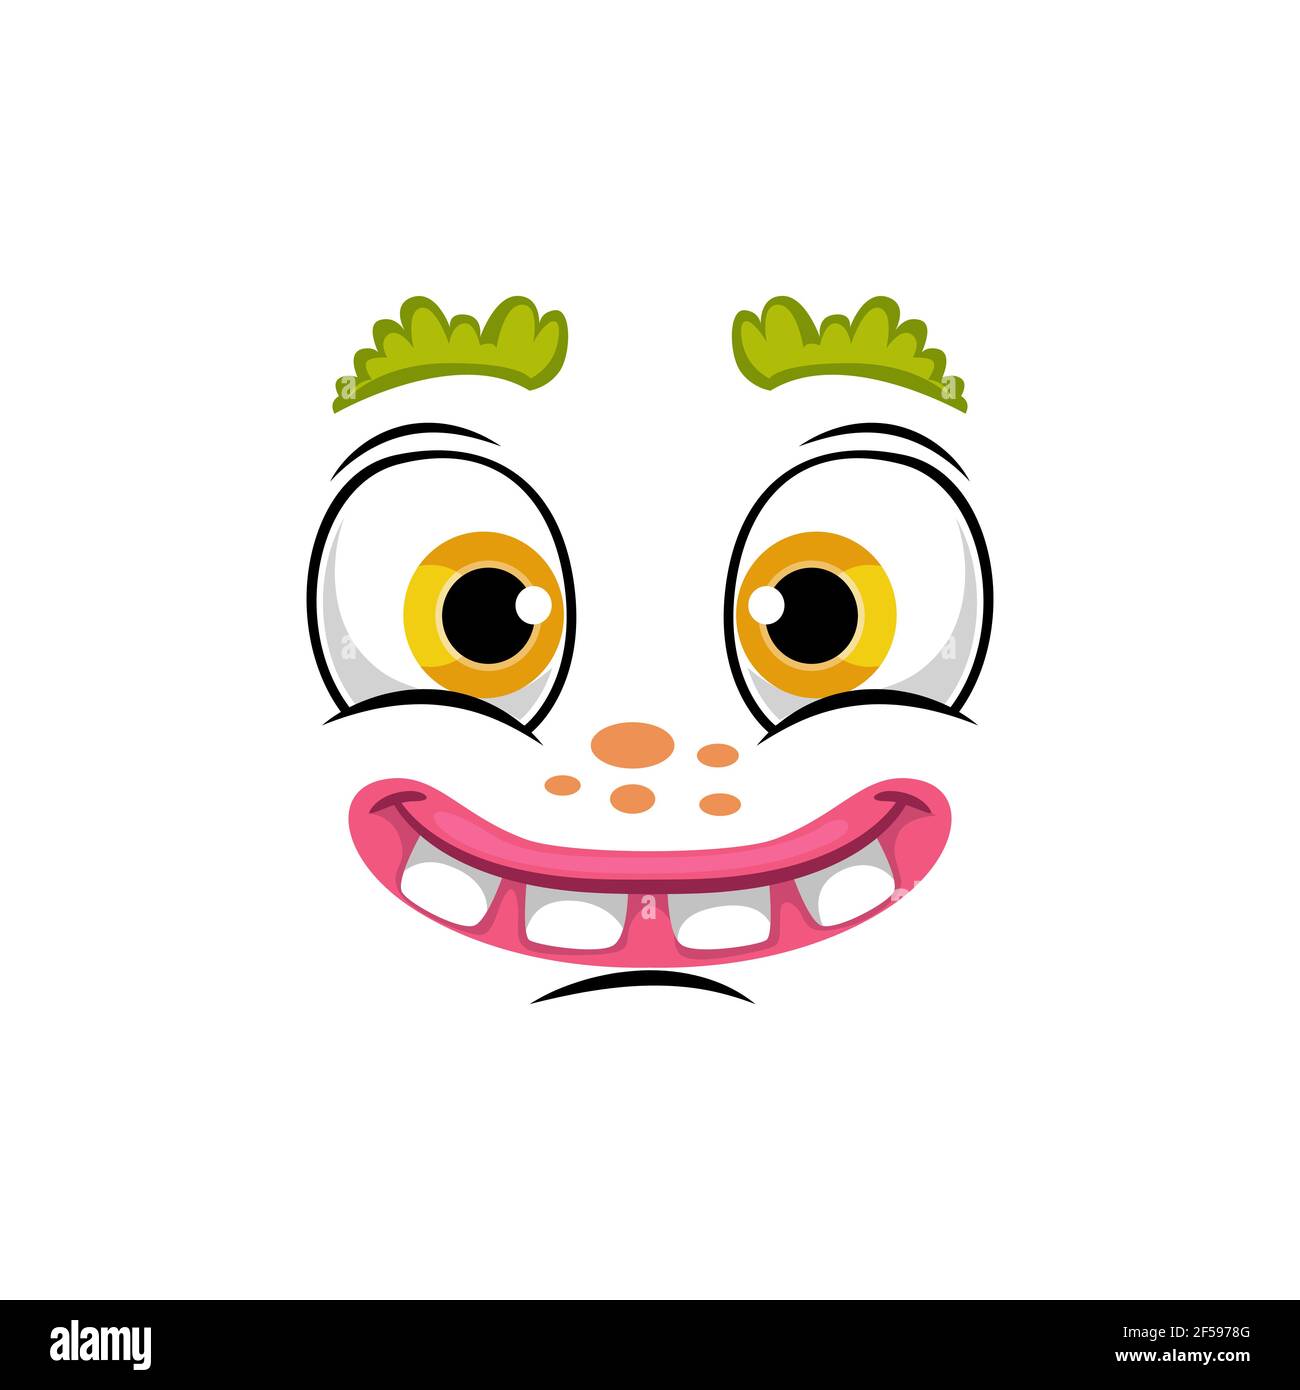 Cartoon face vector icon, smile comic or clown Stock Vector